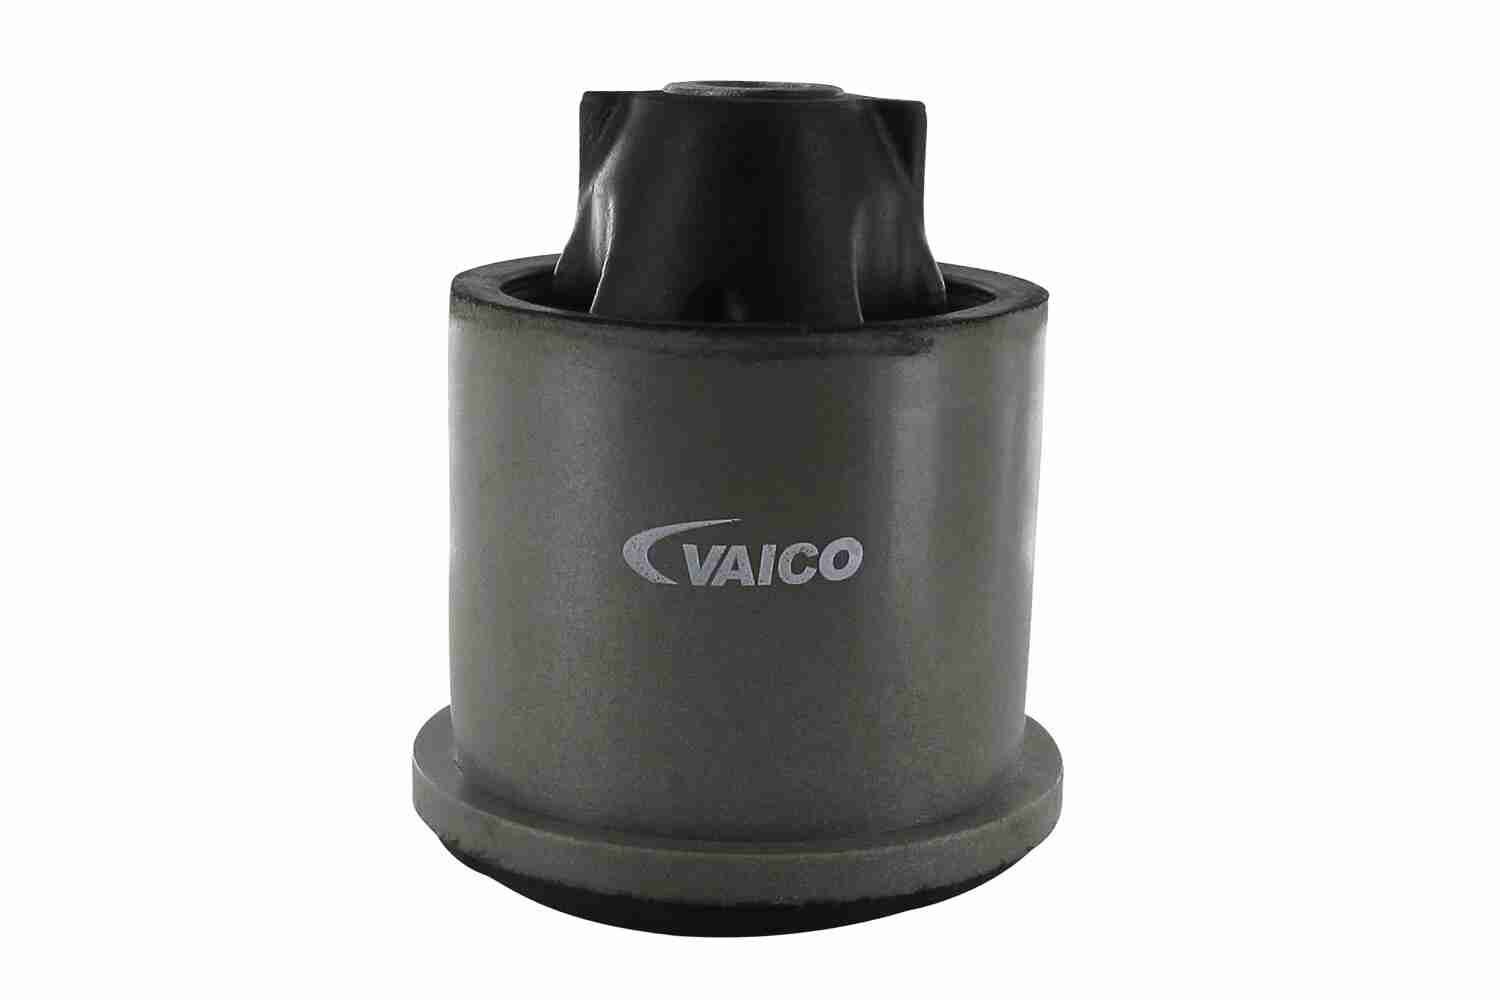 VAICO V21-0014 Axle bush Rear Axle, Original VAICO Quality